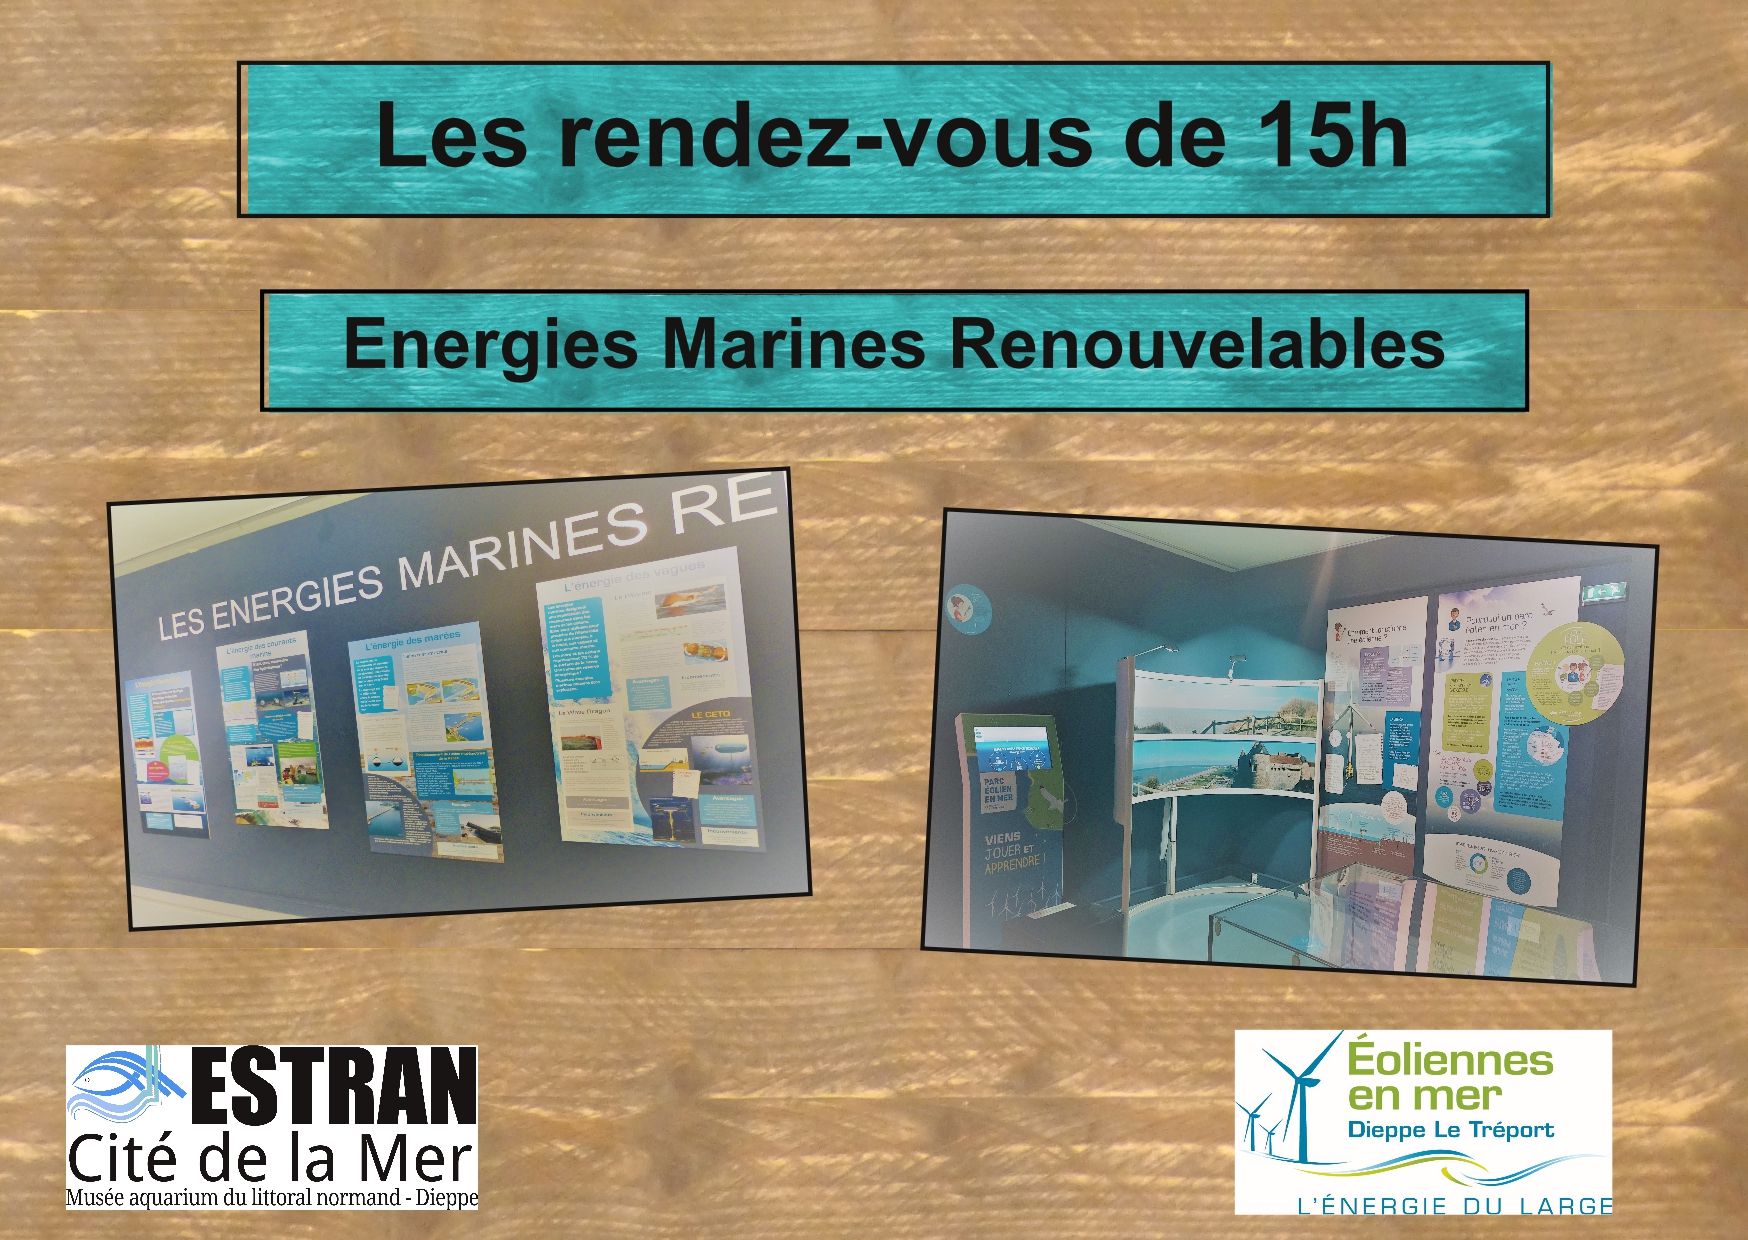 Rendez-Vous de 15h "Energies Marines Renouvelables" @ ESTRAN - Cité de la Mer | Dieppe | Normandie | France